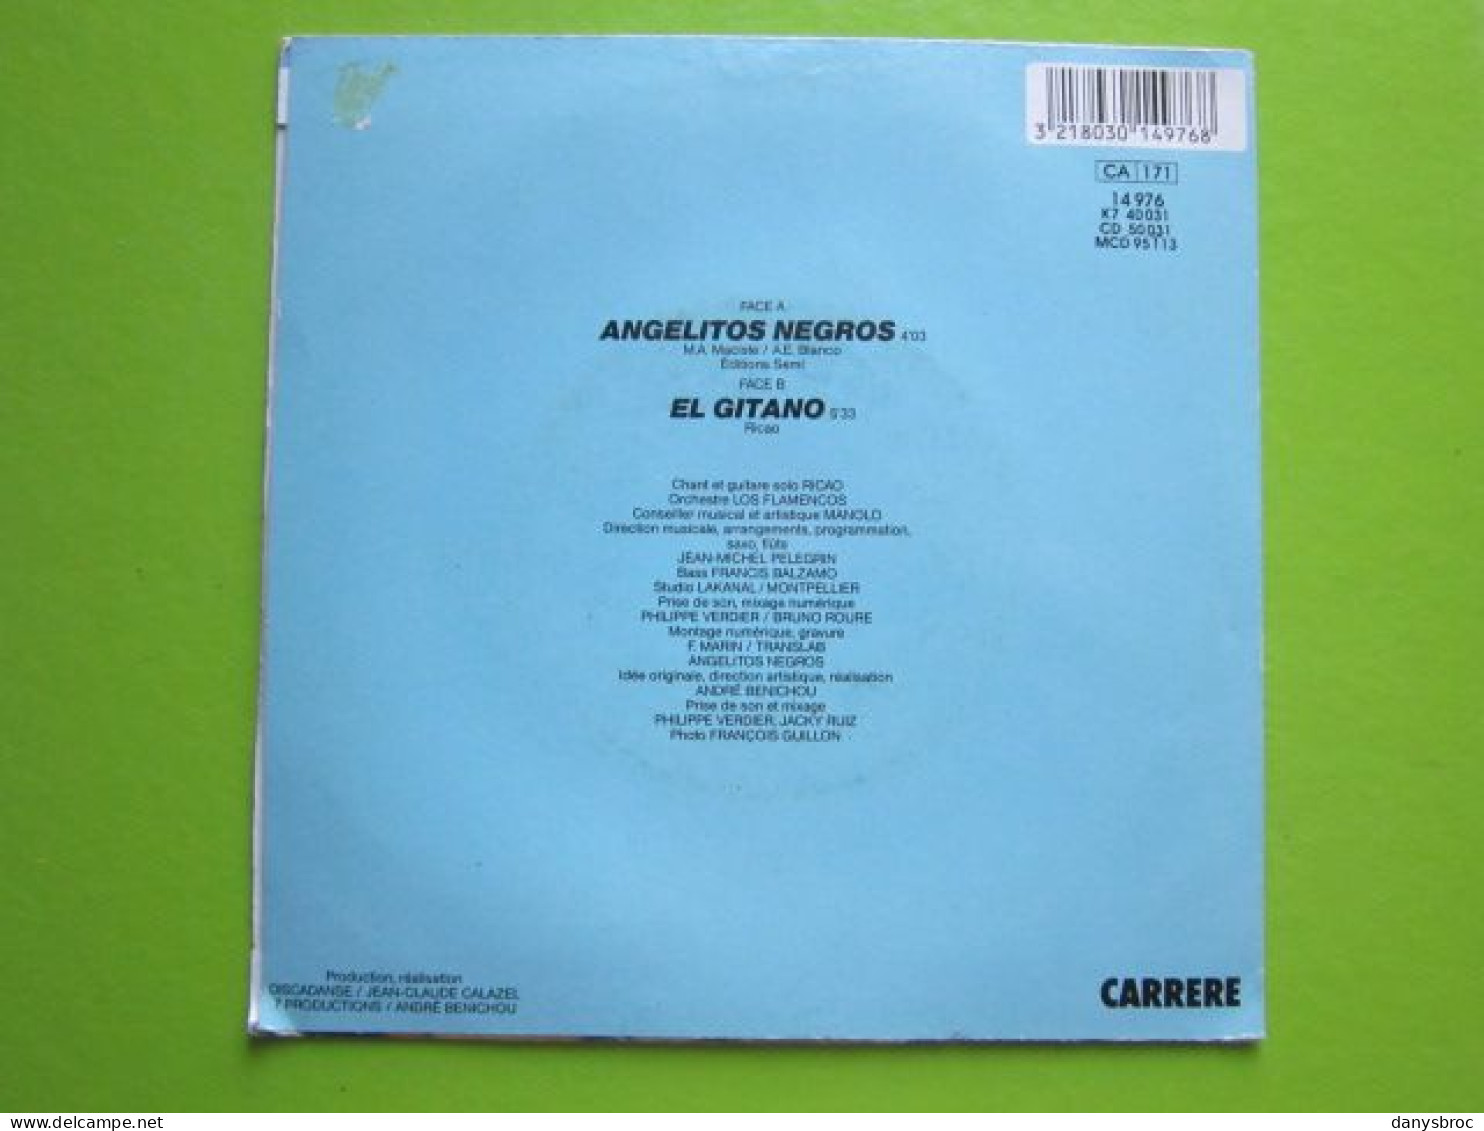 RICAO - EL GITANO - ANGELITOS NEGROS - Disque Vinyle 45 T - Altri - Musica Spagnola